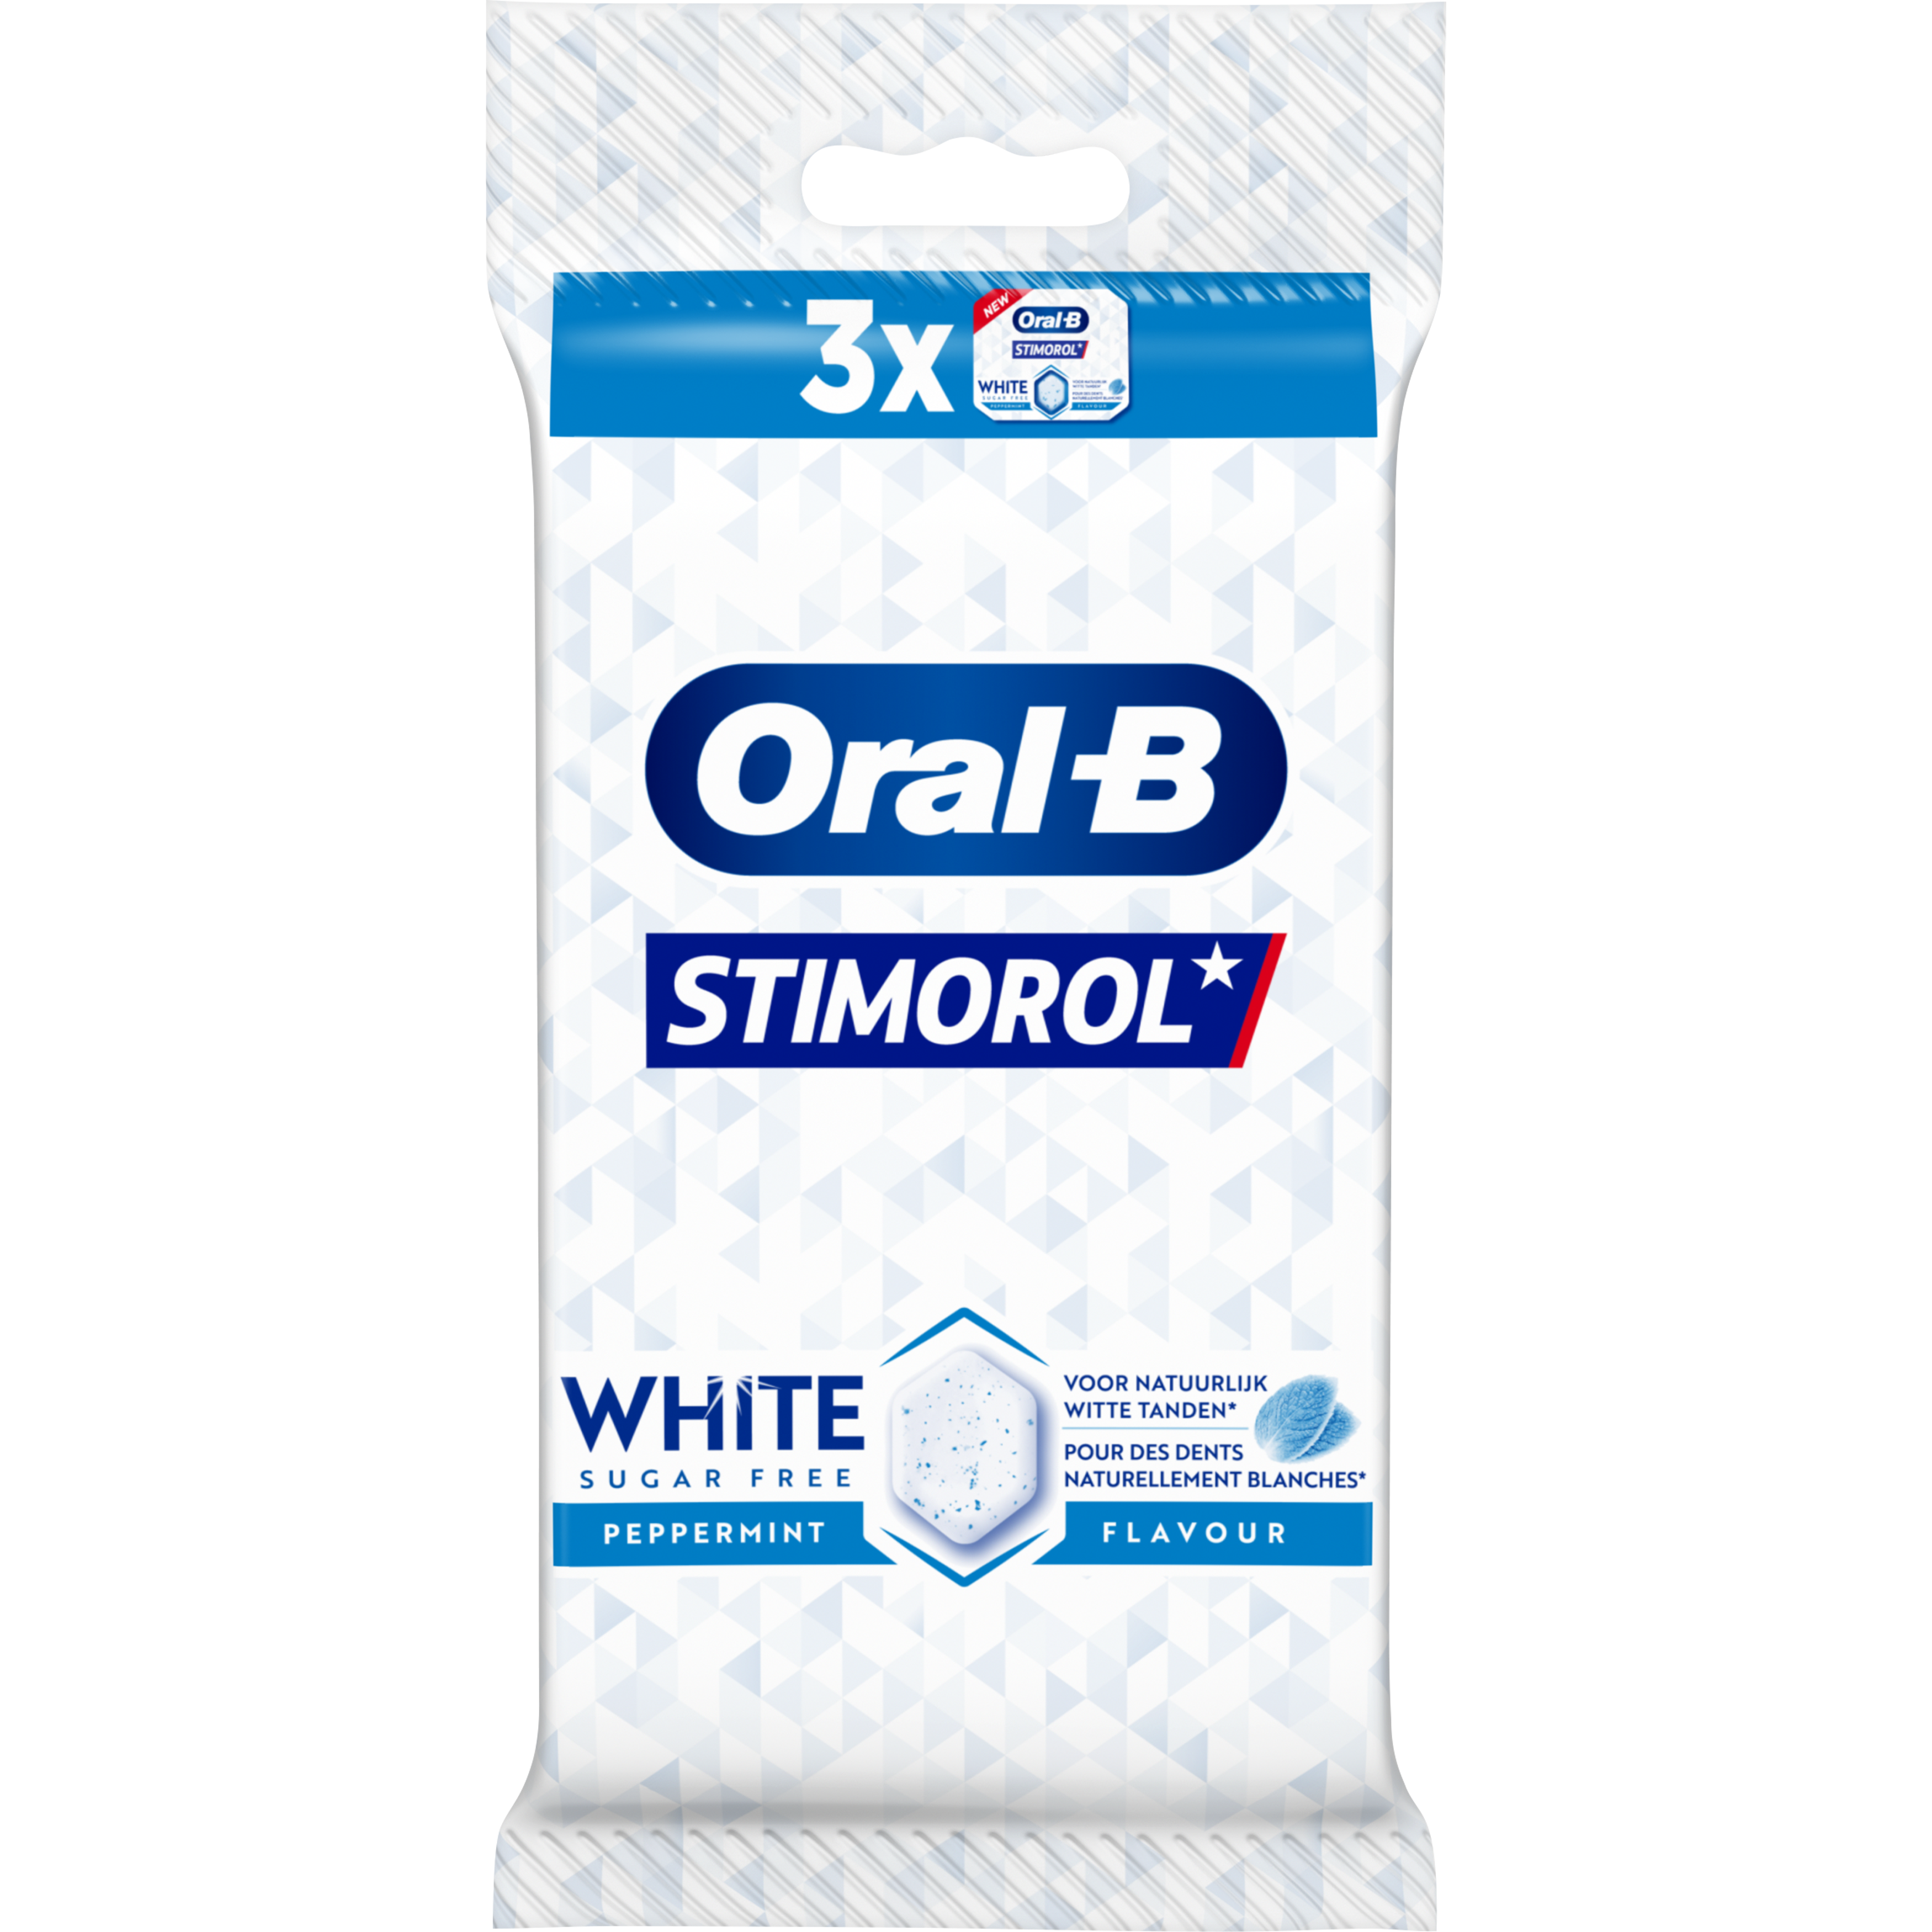 Stimorol Oral-B White